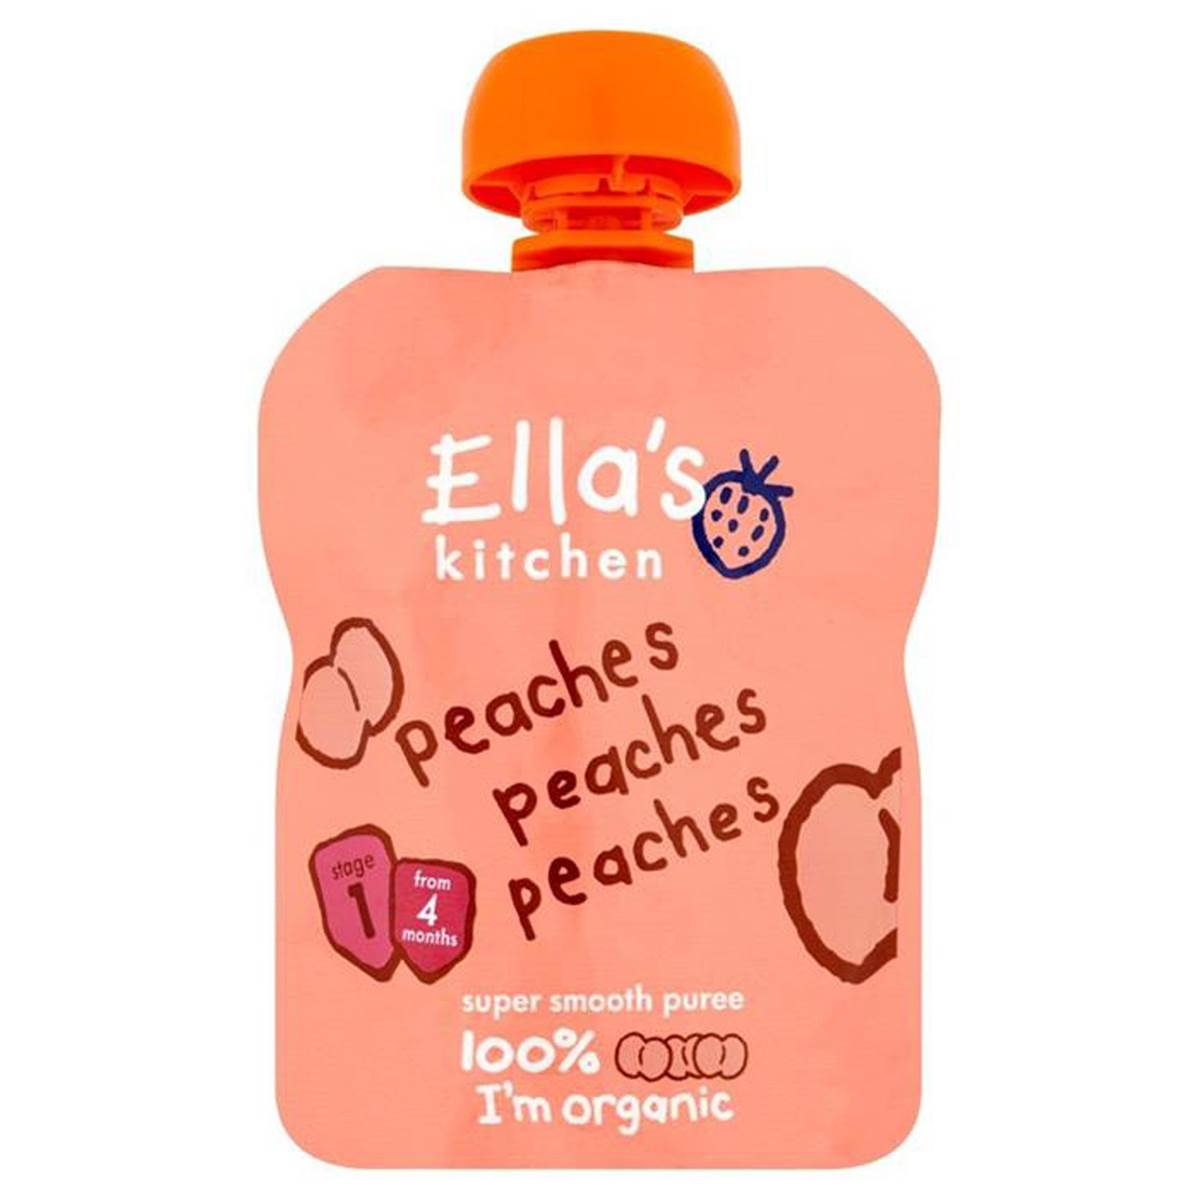 Ellas Kitchen Peaches Peaches Peaches - 70g